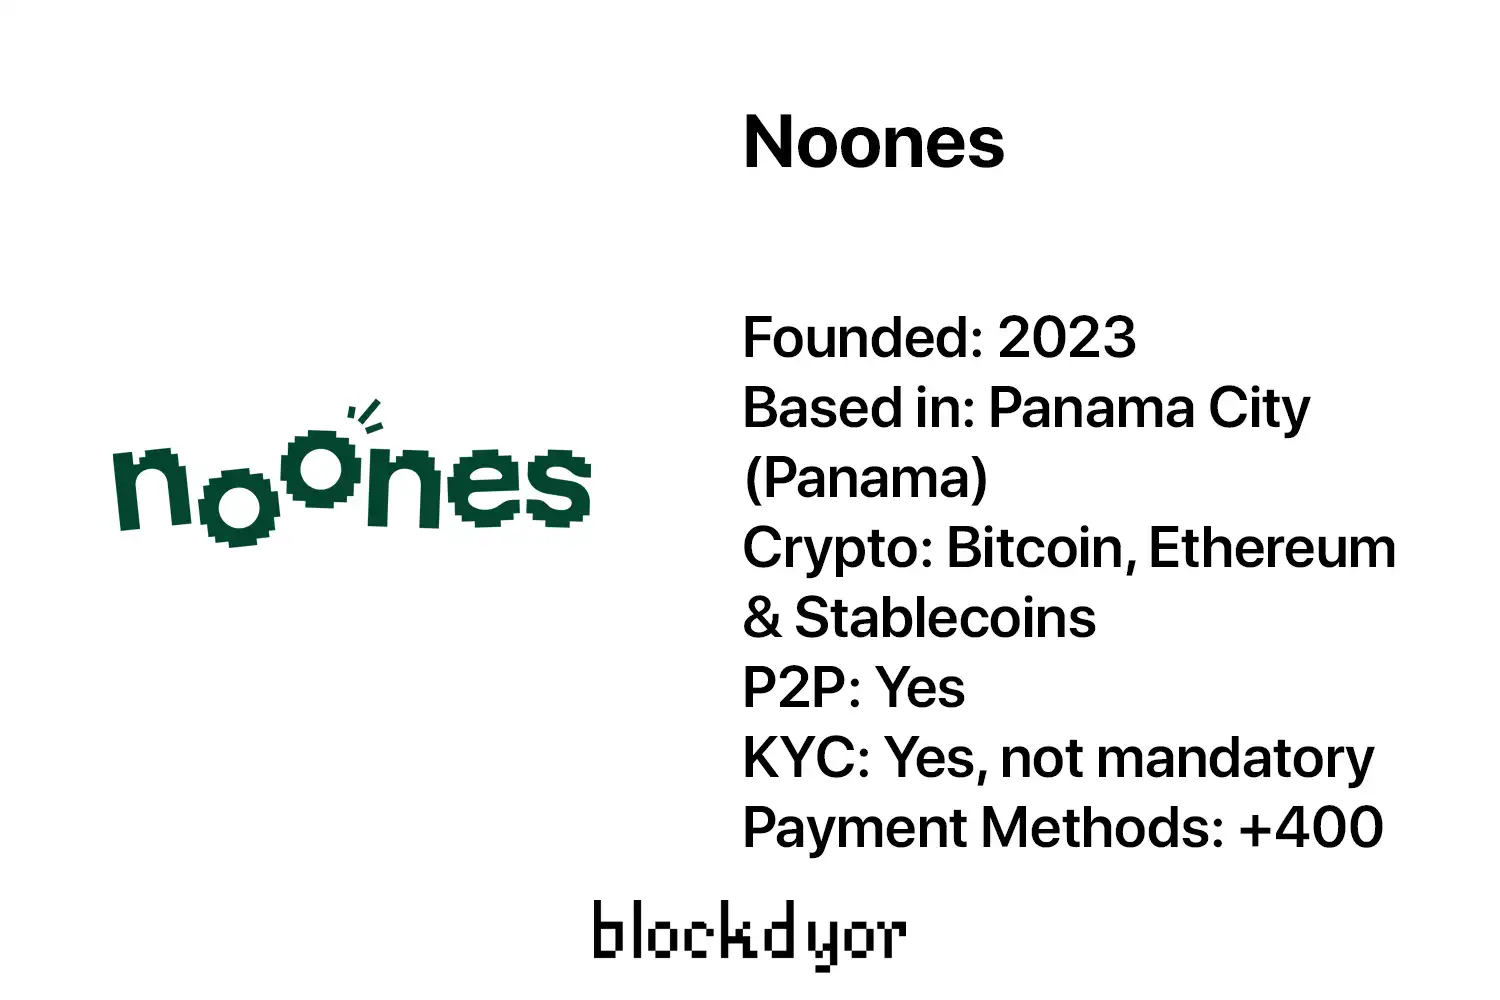 Noones Overview